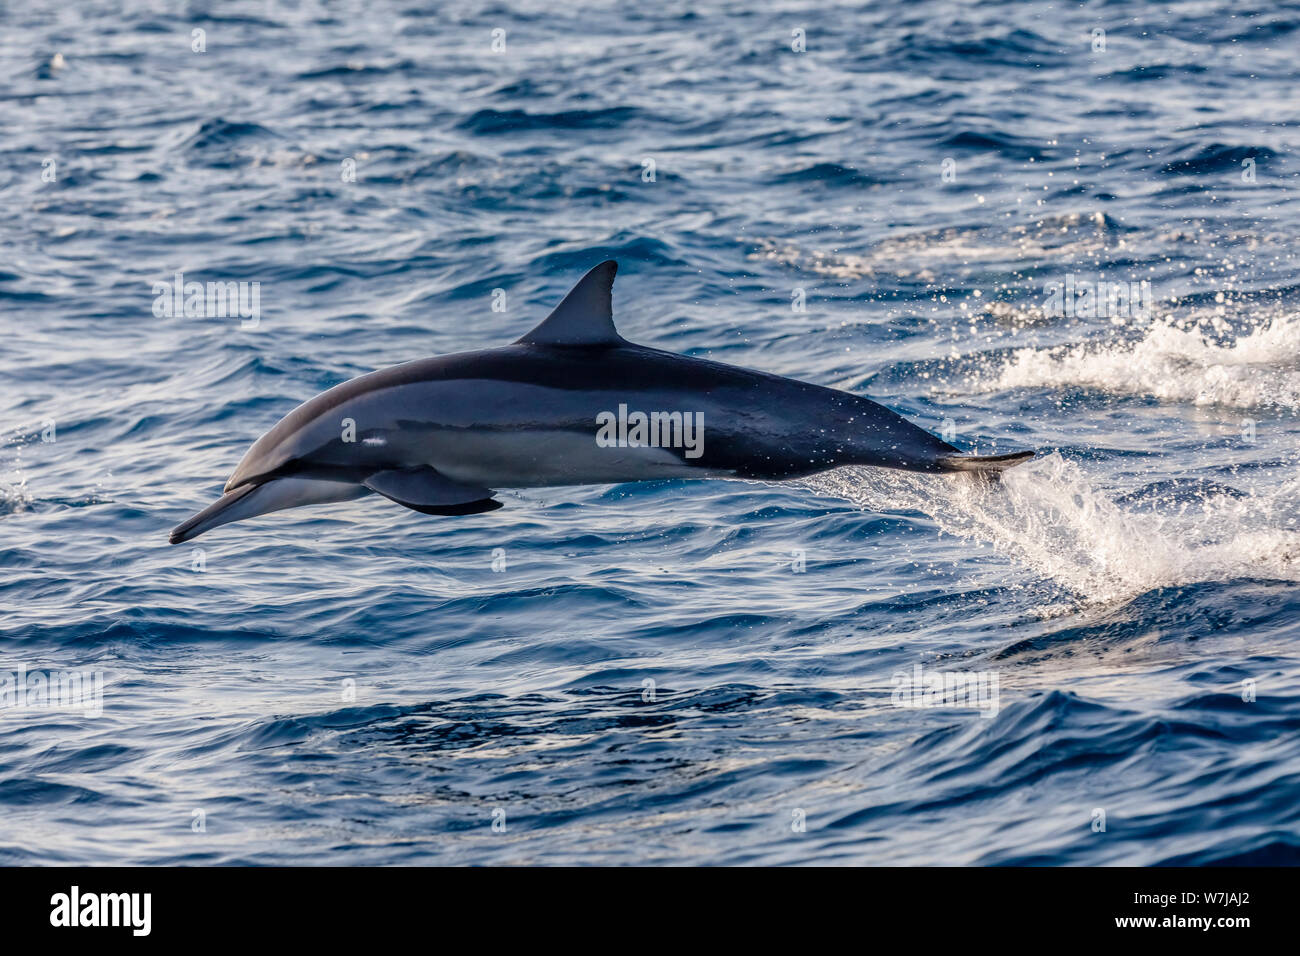 Un dauphin à long bec (Stenella longirostris) bondit hors de l'eau à grande vitesse, vu alors que l'observation des baleines à Weligama, sur la côte sud du Sri Lanka Banque D'Images